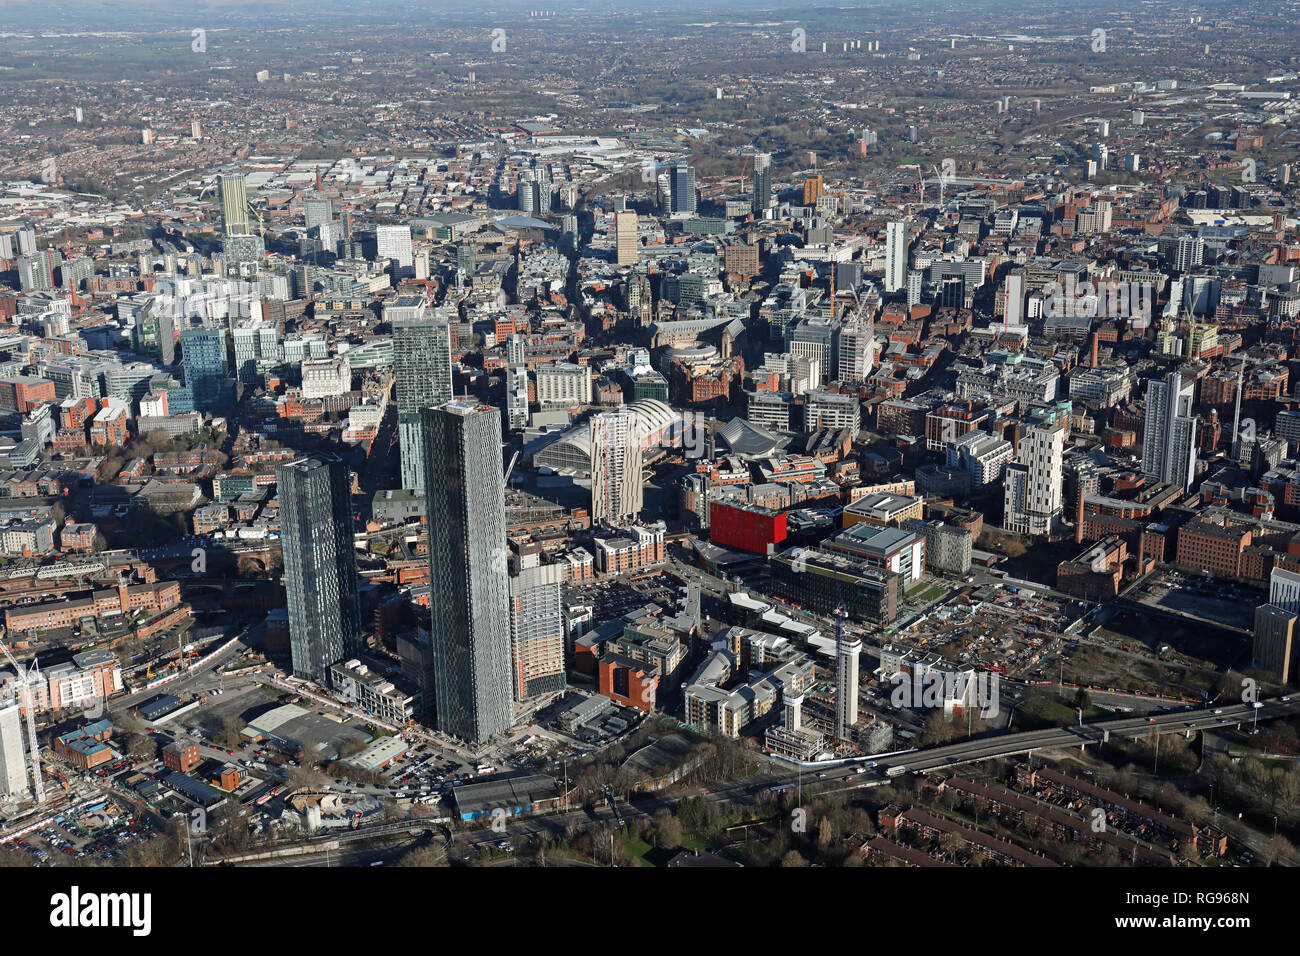 Vista aerea del centro città di Manchester con la piazza Deansgate, o Owen Street grattacieli sviluppo, prominente Foto Stock